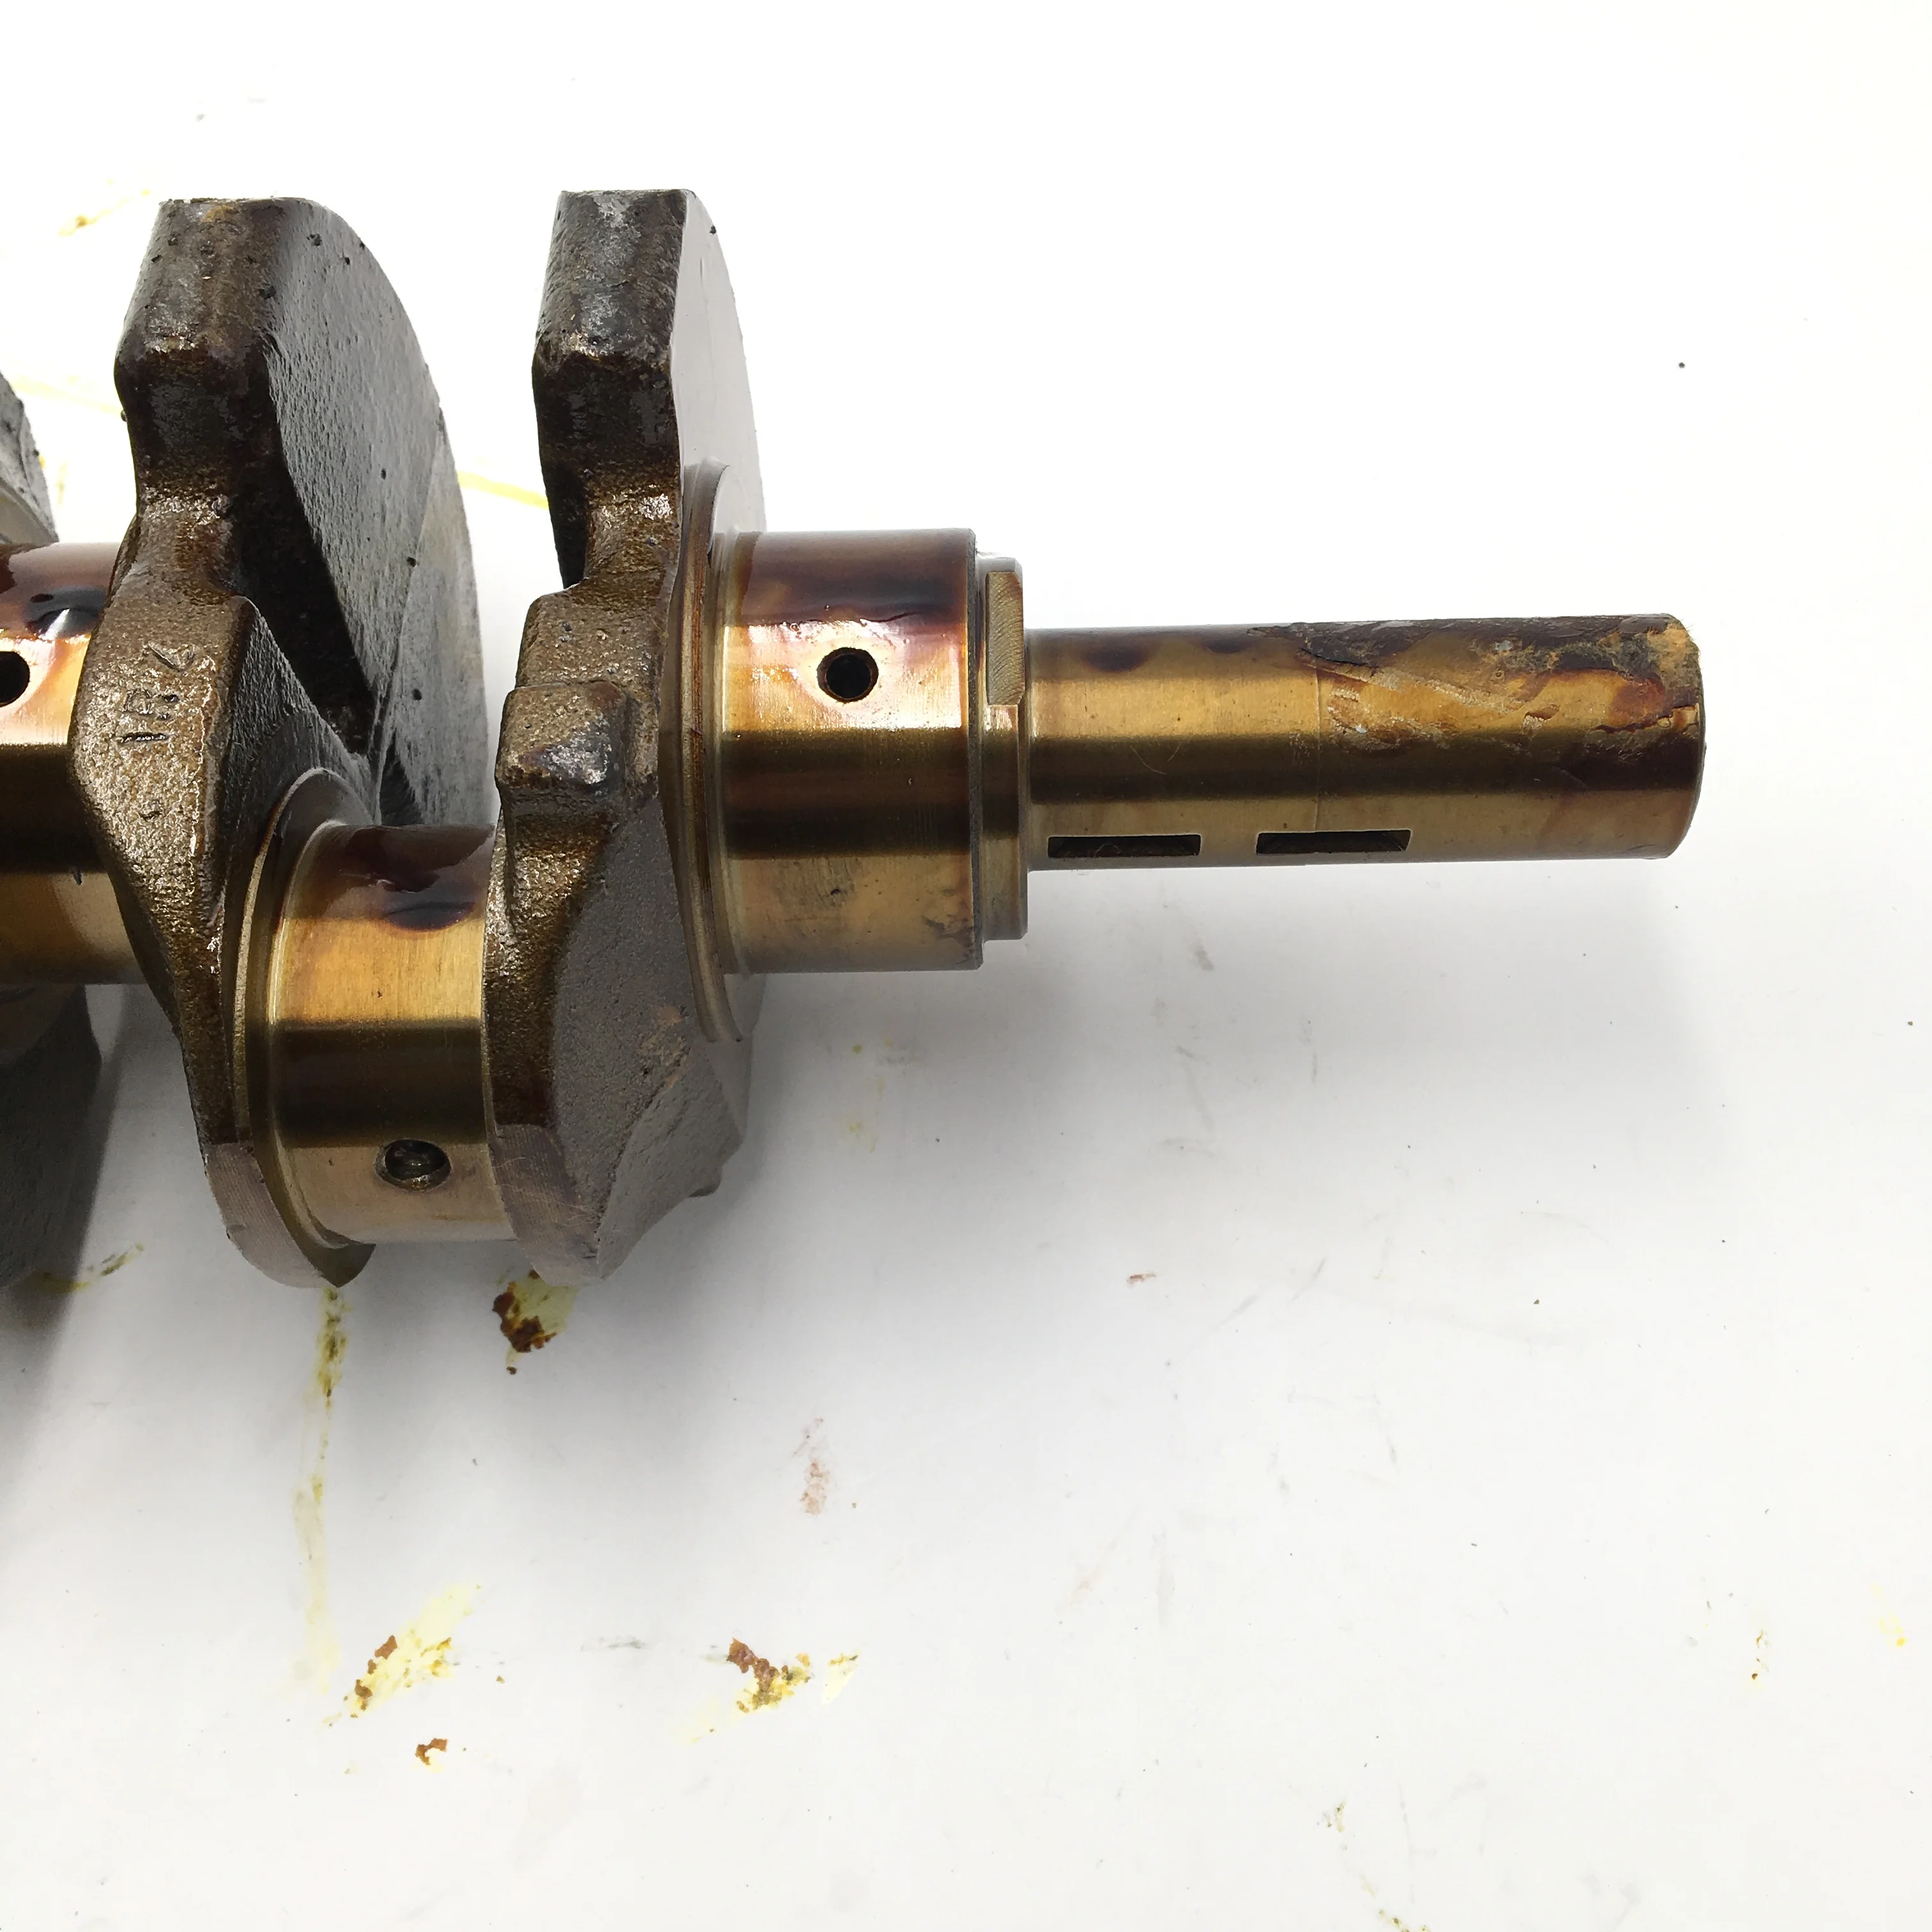 13411-75900 1RZ Nodular Cast Iron Crankshaft For Toyota 1RZ Diesel Engine